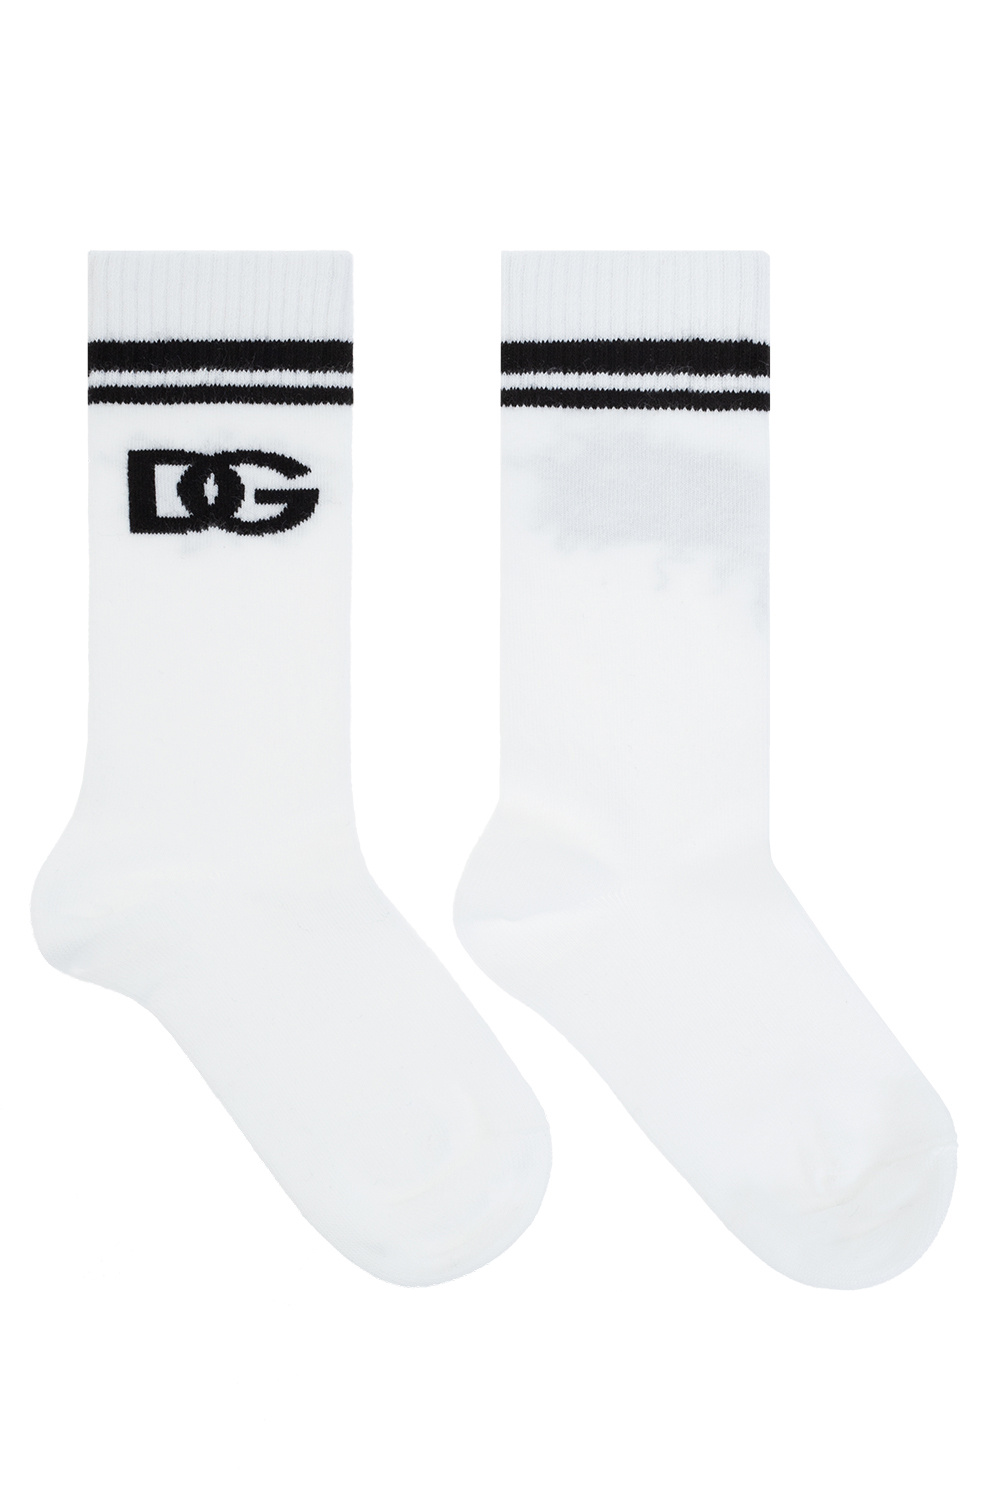 Dolce & Gabbana Kids Monogrammed socks